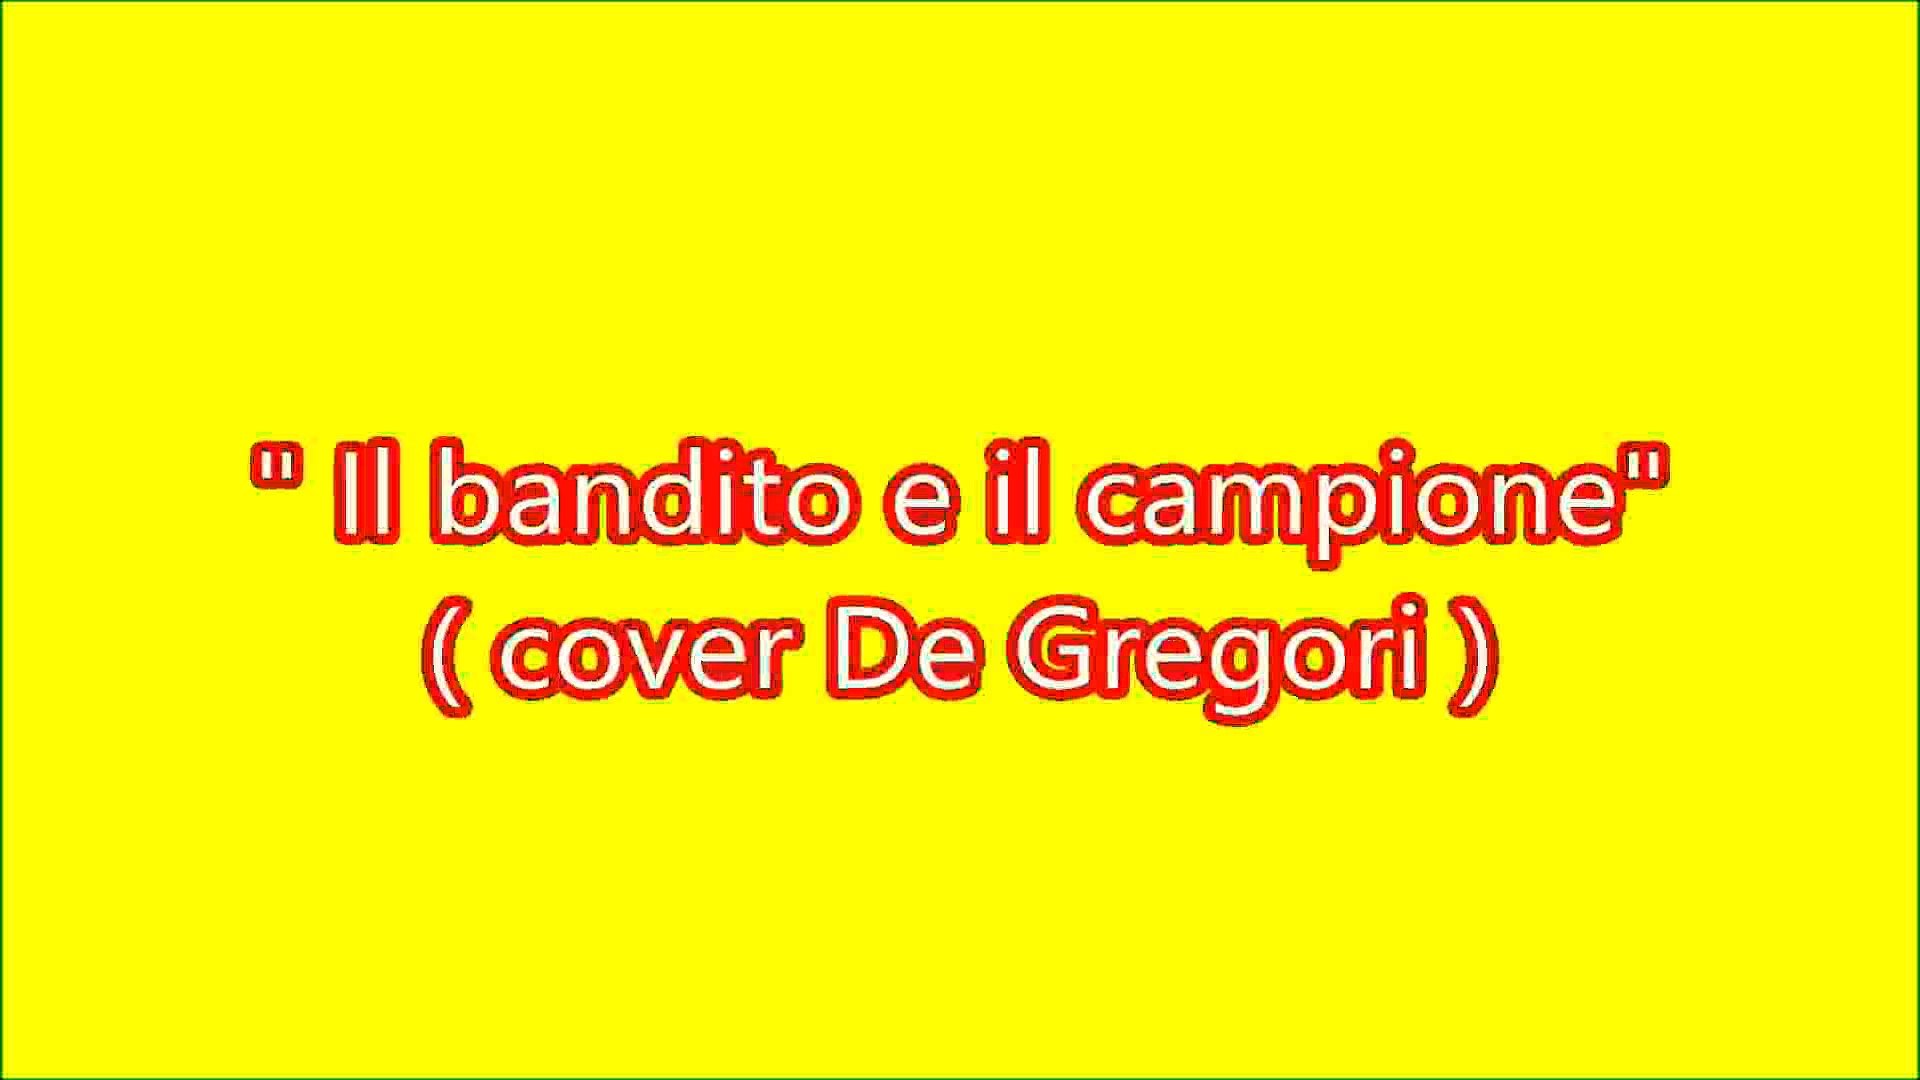 Il bandito e il campione (Francesco De Gregori cover) - Video Dailymotion